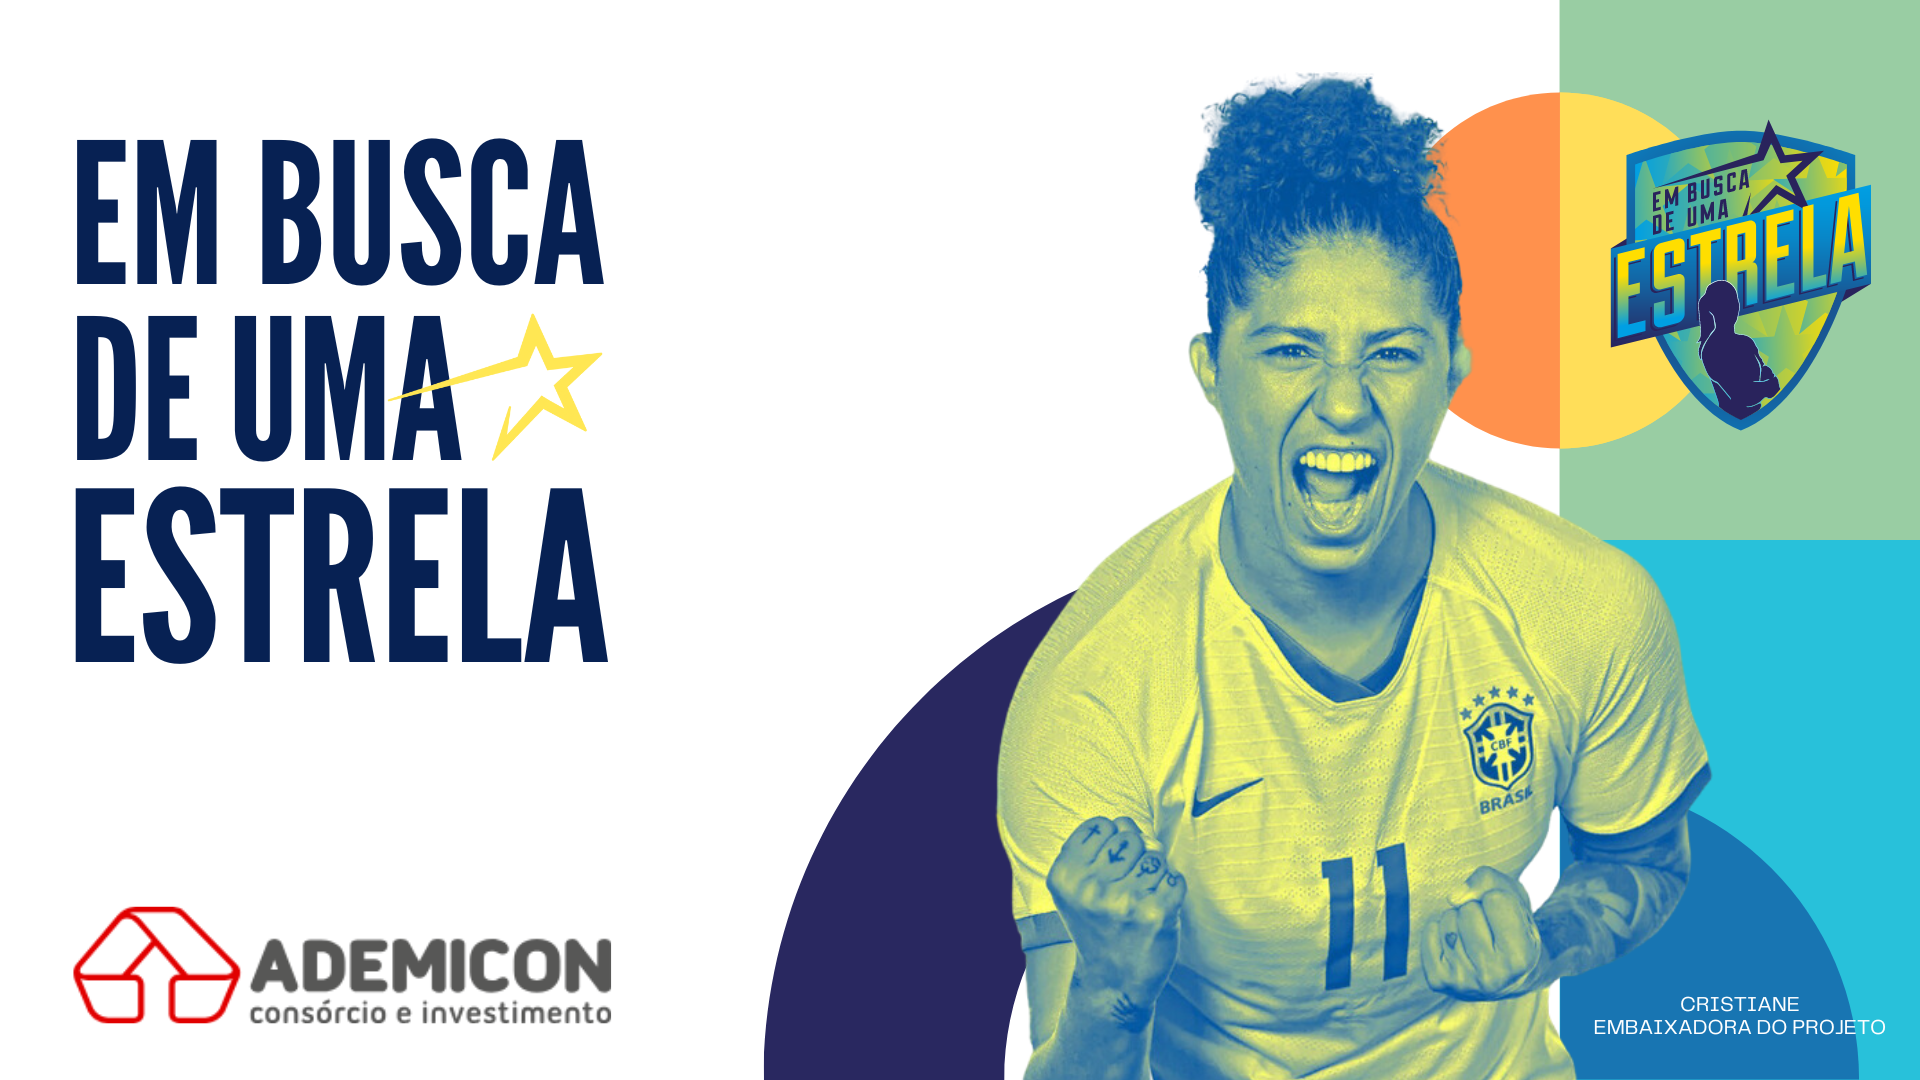 Ademicon reforça apoio ao futebol feminino com patrocínio a 'Em Busca de Uma Estrela